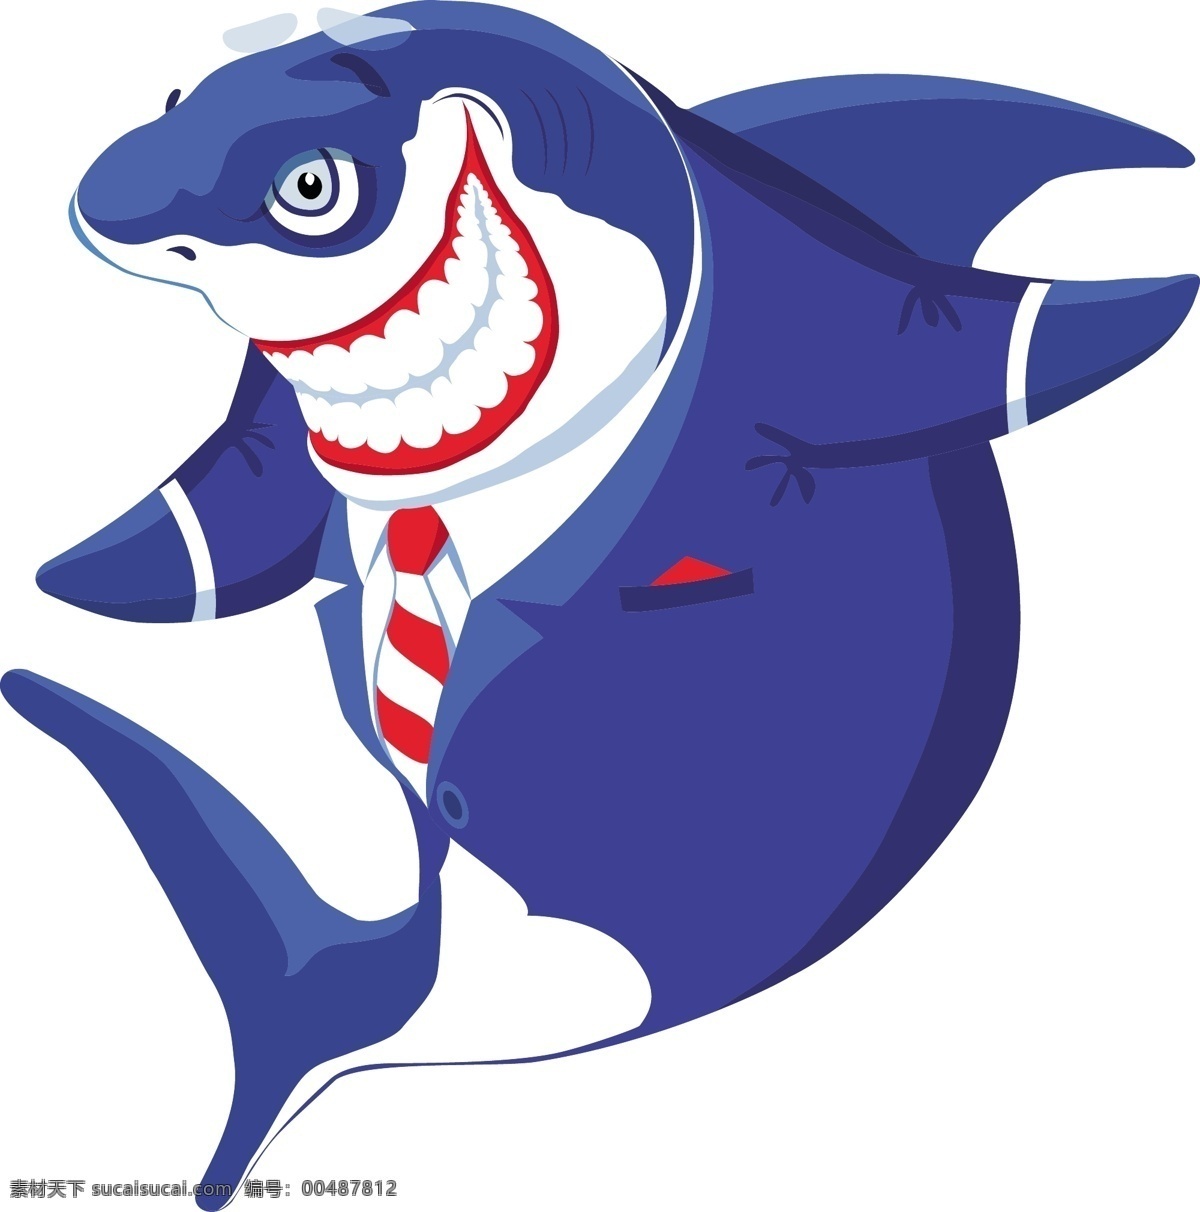 动画 海洋 海洋生物 卡通 卡通鲨鱼 蓝色 鲨鱼 生物世界 西服 矢量 西装 模板下载 boss 冷血 凶狠 残酷 虎鲨 拟人